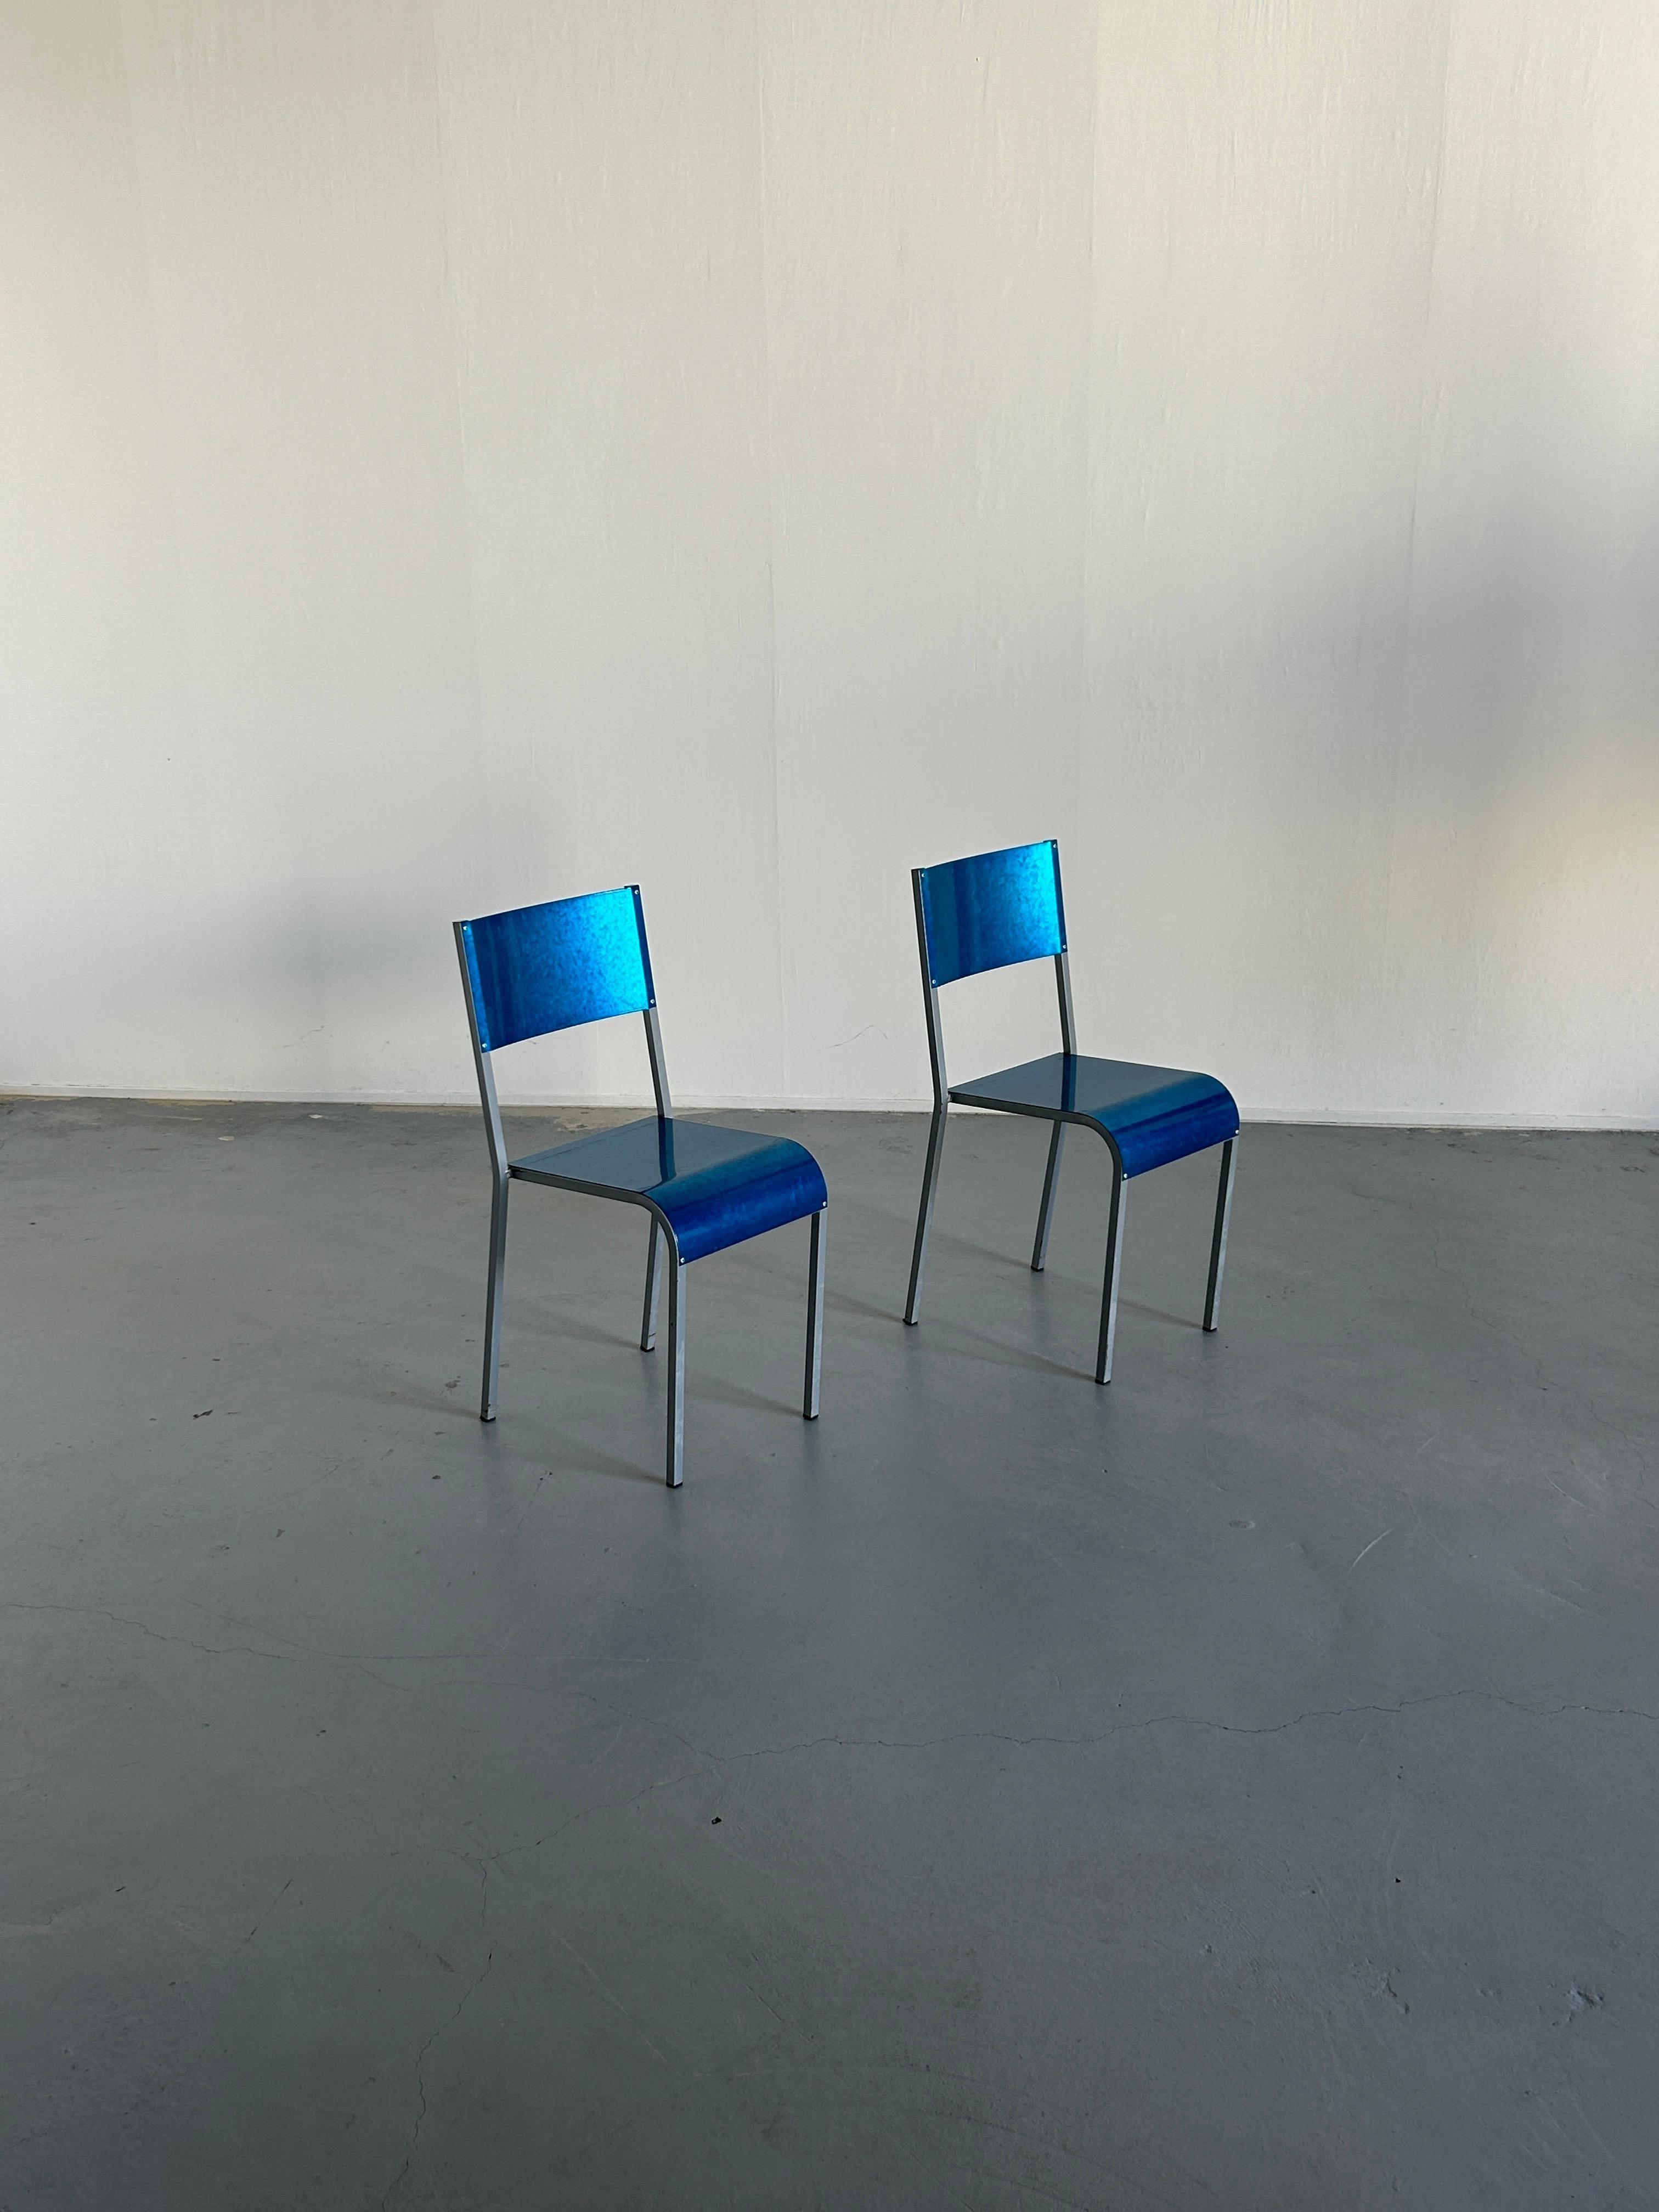 Zwei Esszimmerstühle von Parisotto aus der Mitte des Jahrhunderts, bestehend aus einem Metallgestell und einer Sitzfläche und Rückenlehne aus blauem verzinktem Blech.
Eine postmoderne Form in industrieller Ganzmetallfertigung, die in den 1980er